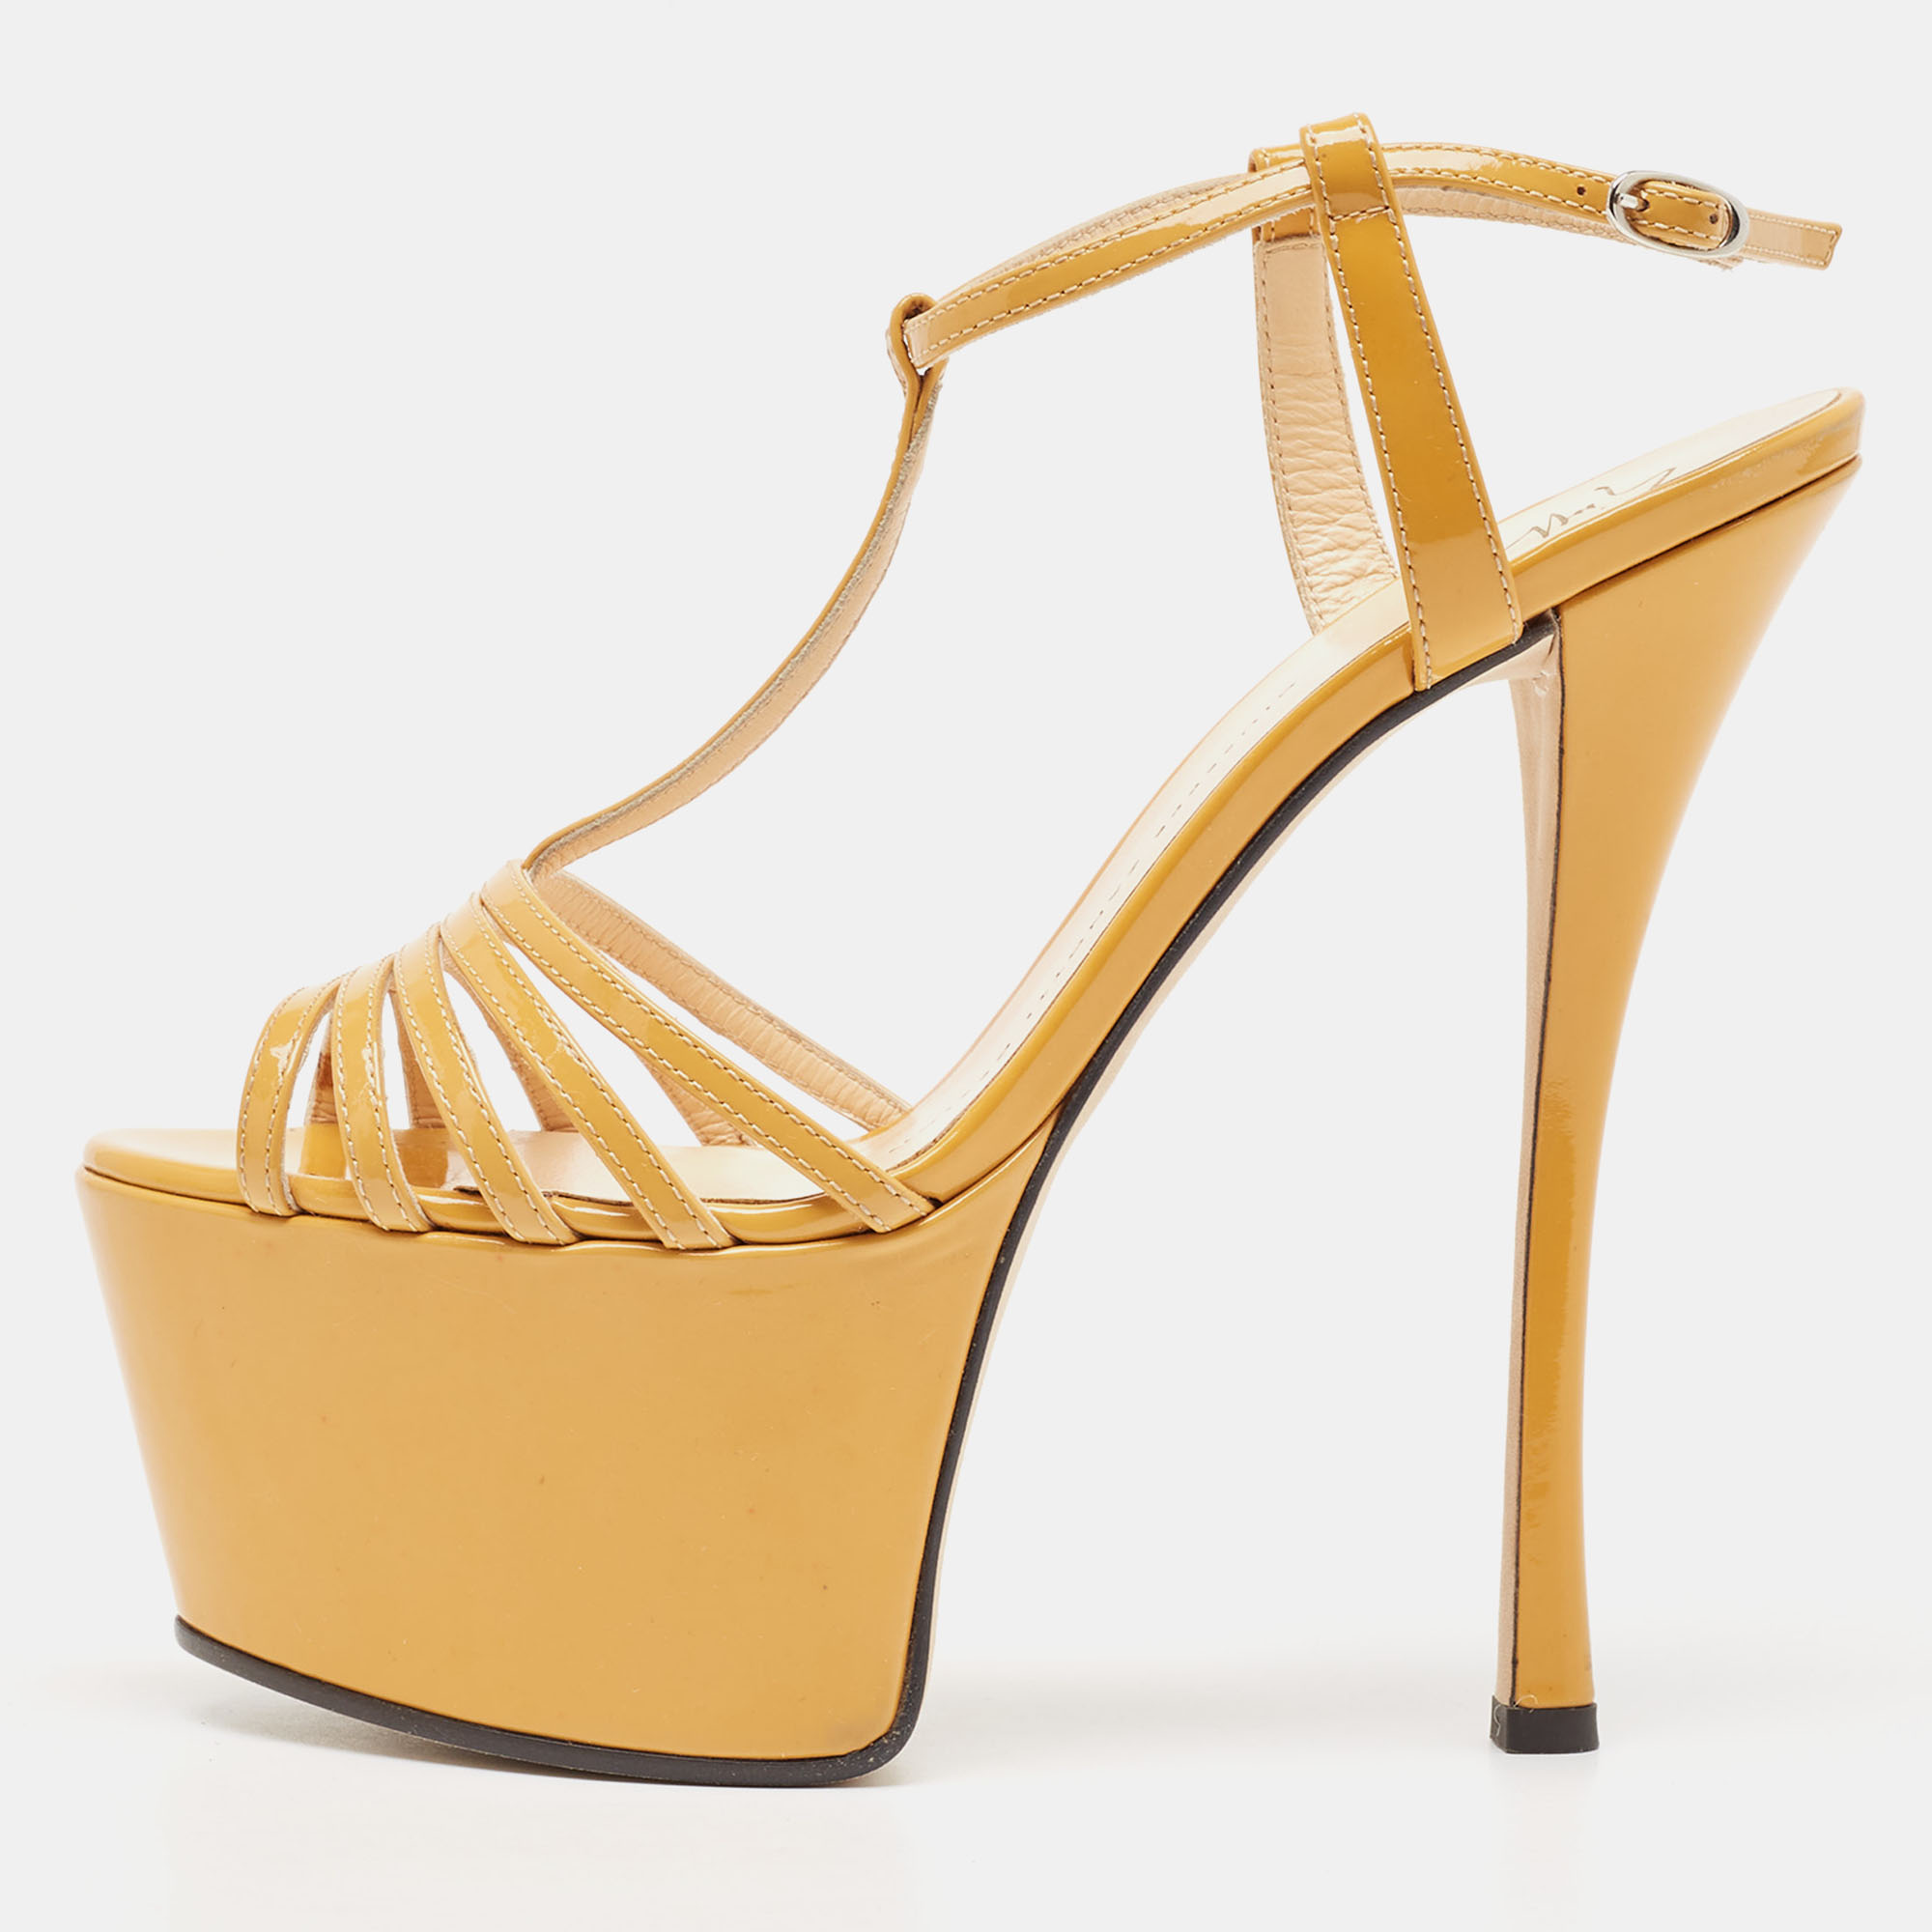 Giuseppe zanotti yellow patent leather t-strap platform sandals size 37